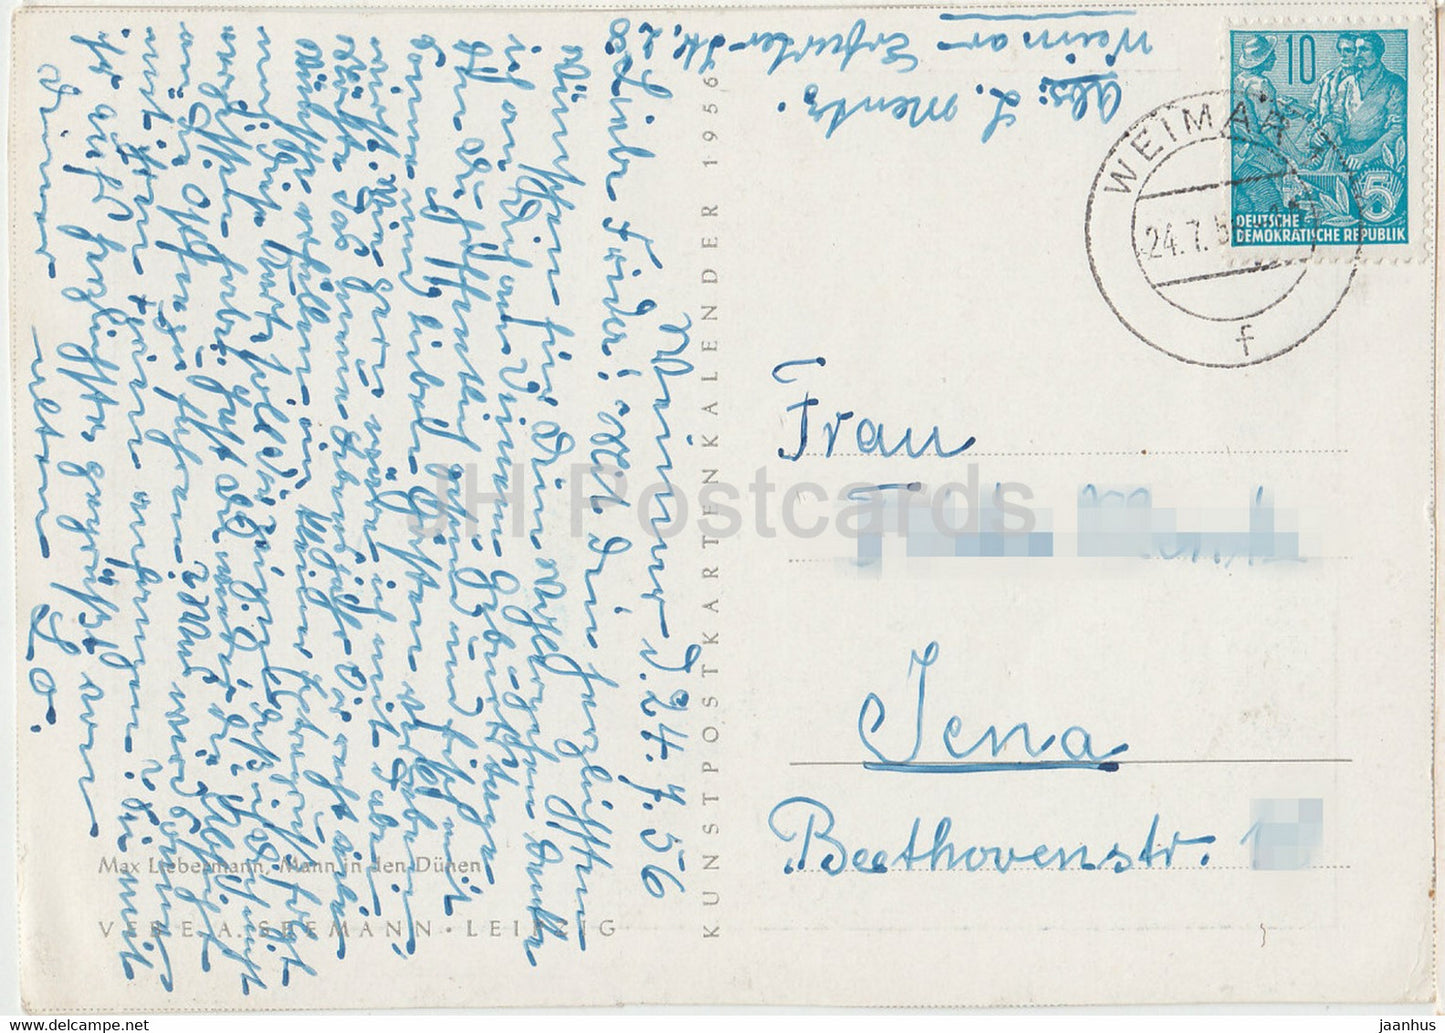 Gemälde von Max Liebermann – Mann in den Dünen – Deutsche Kunst – 1956 – Deutschland – gebraucht